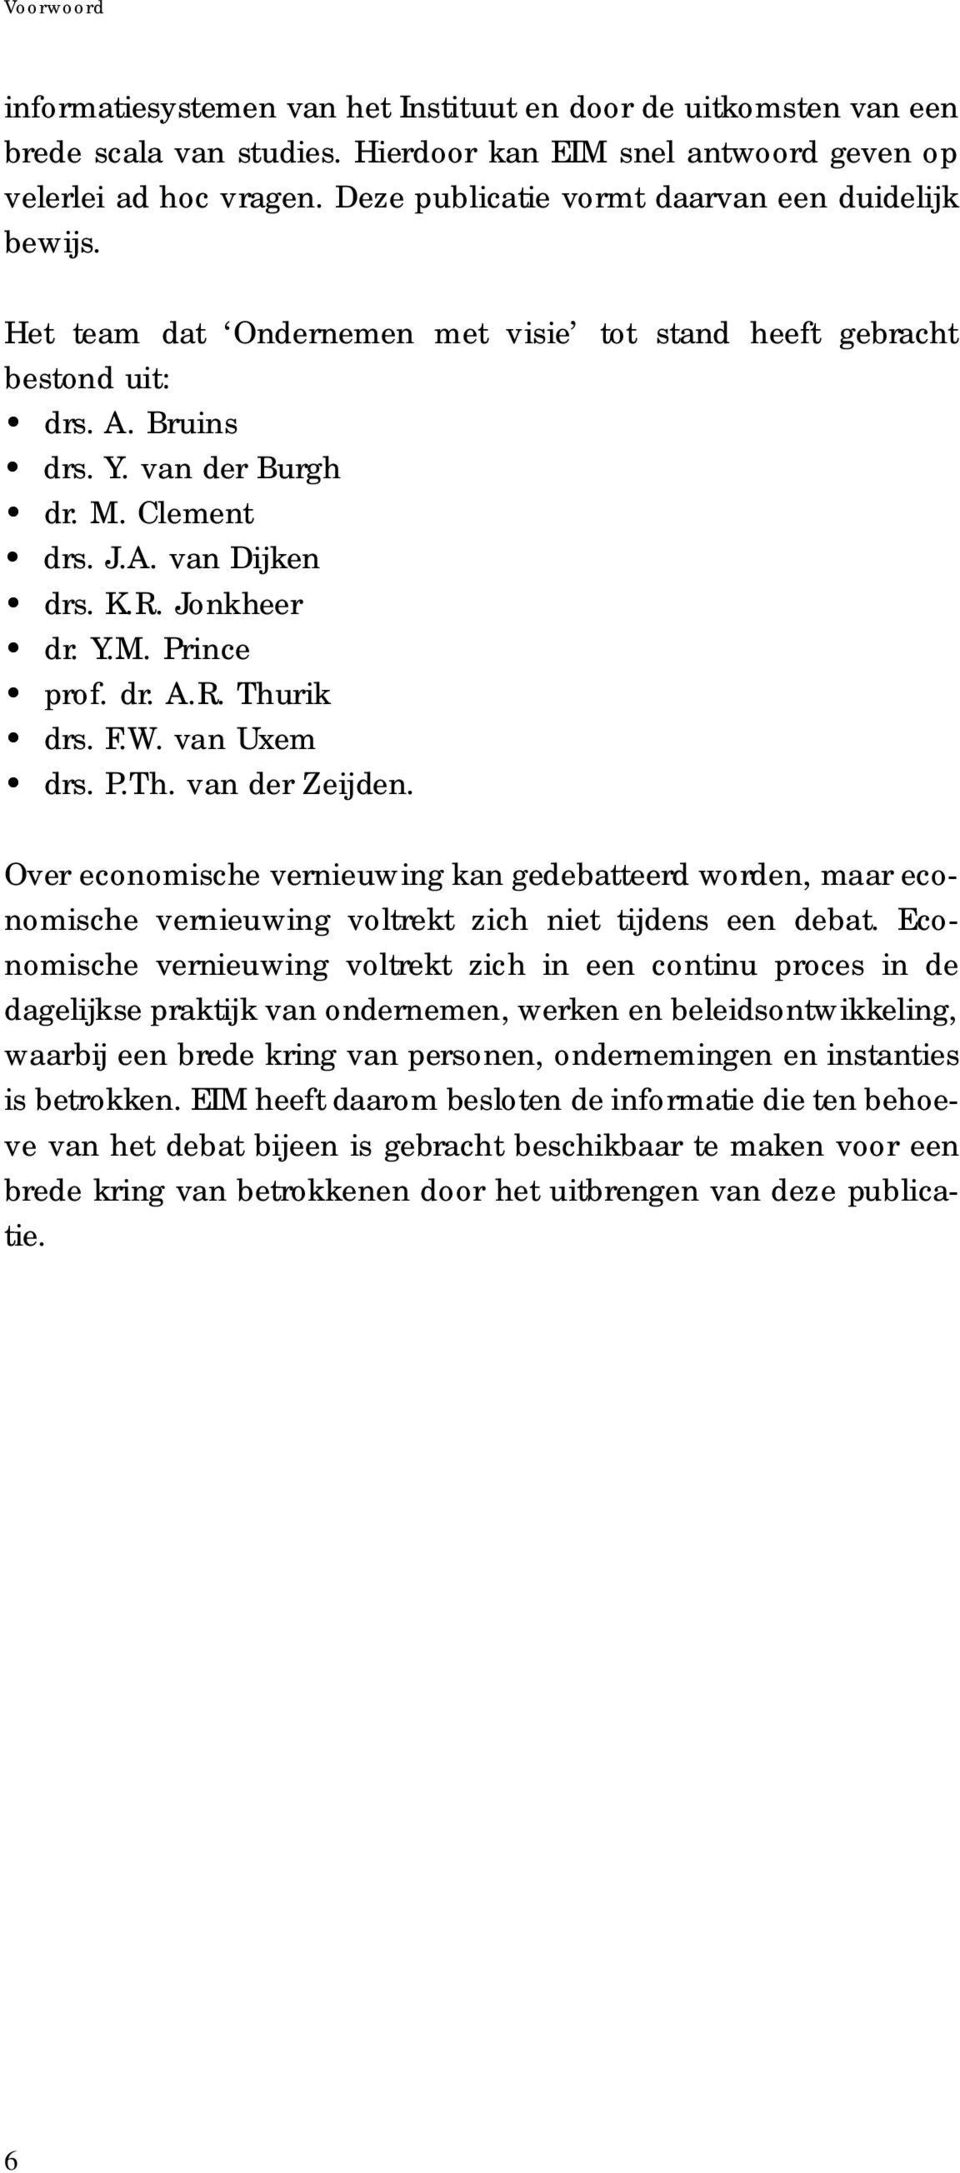 K.R. Jonkheer d r. Y.M. Prince p rof. dr. A.R. Thurik d rs. F. W. van Uxe m d rs. P.Th. van der Zeijden.